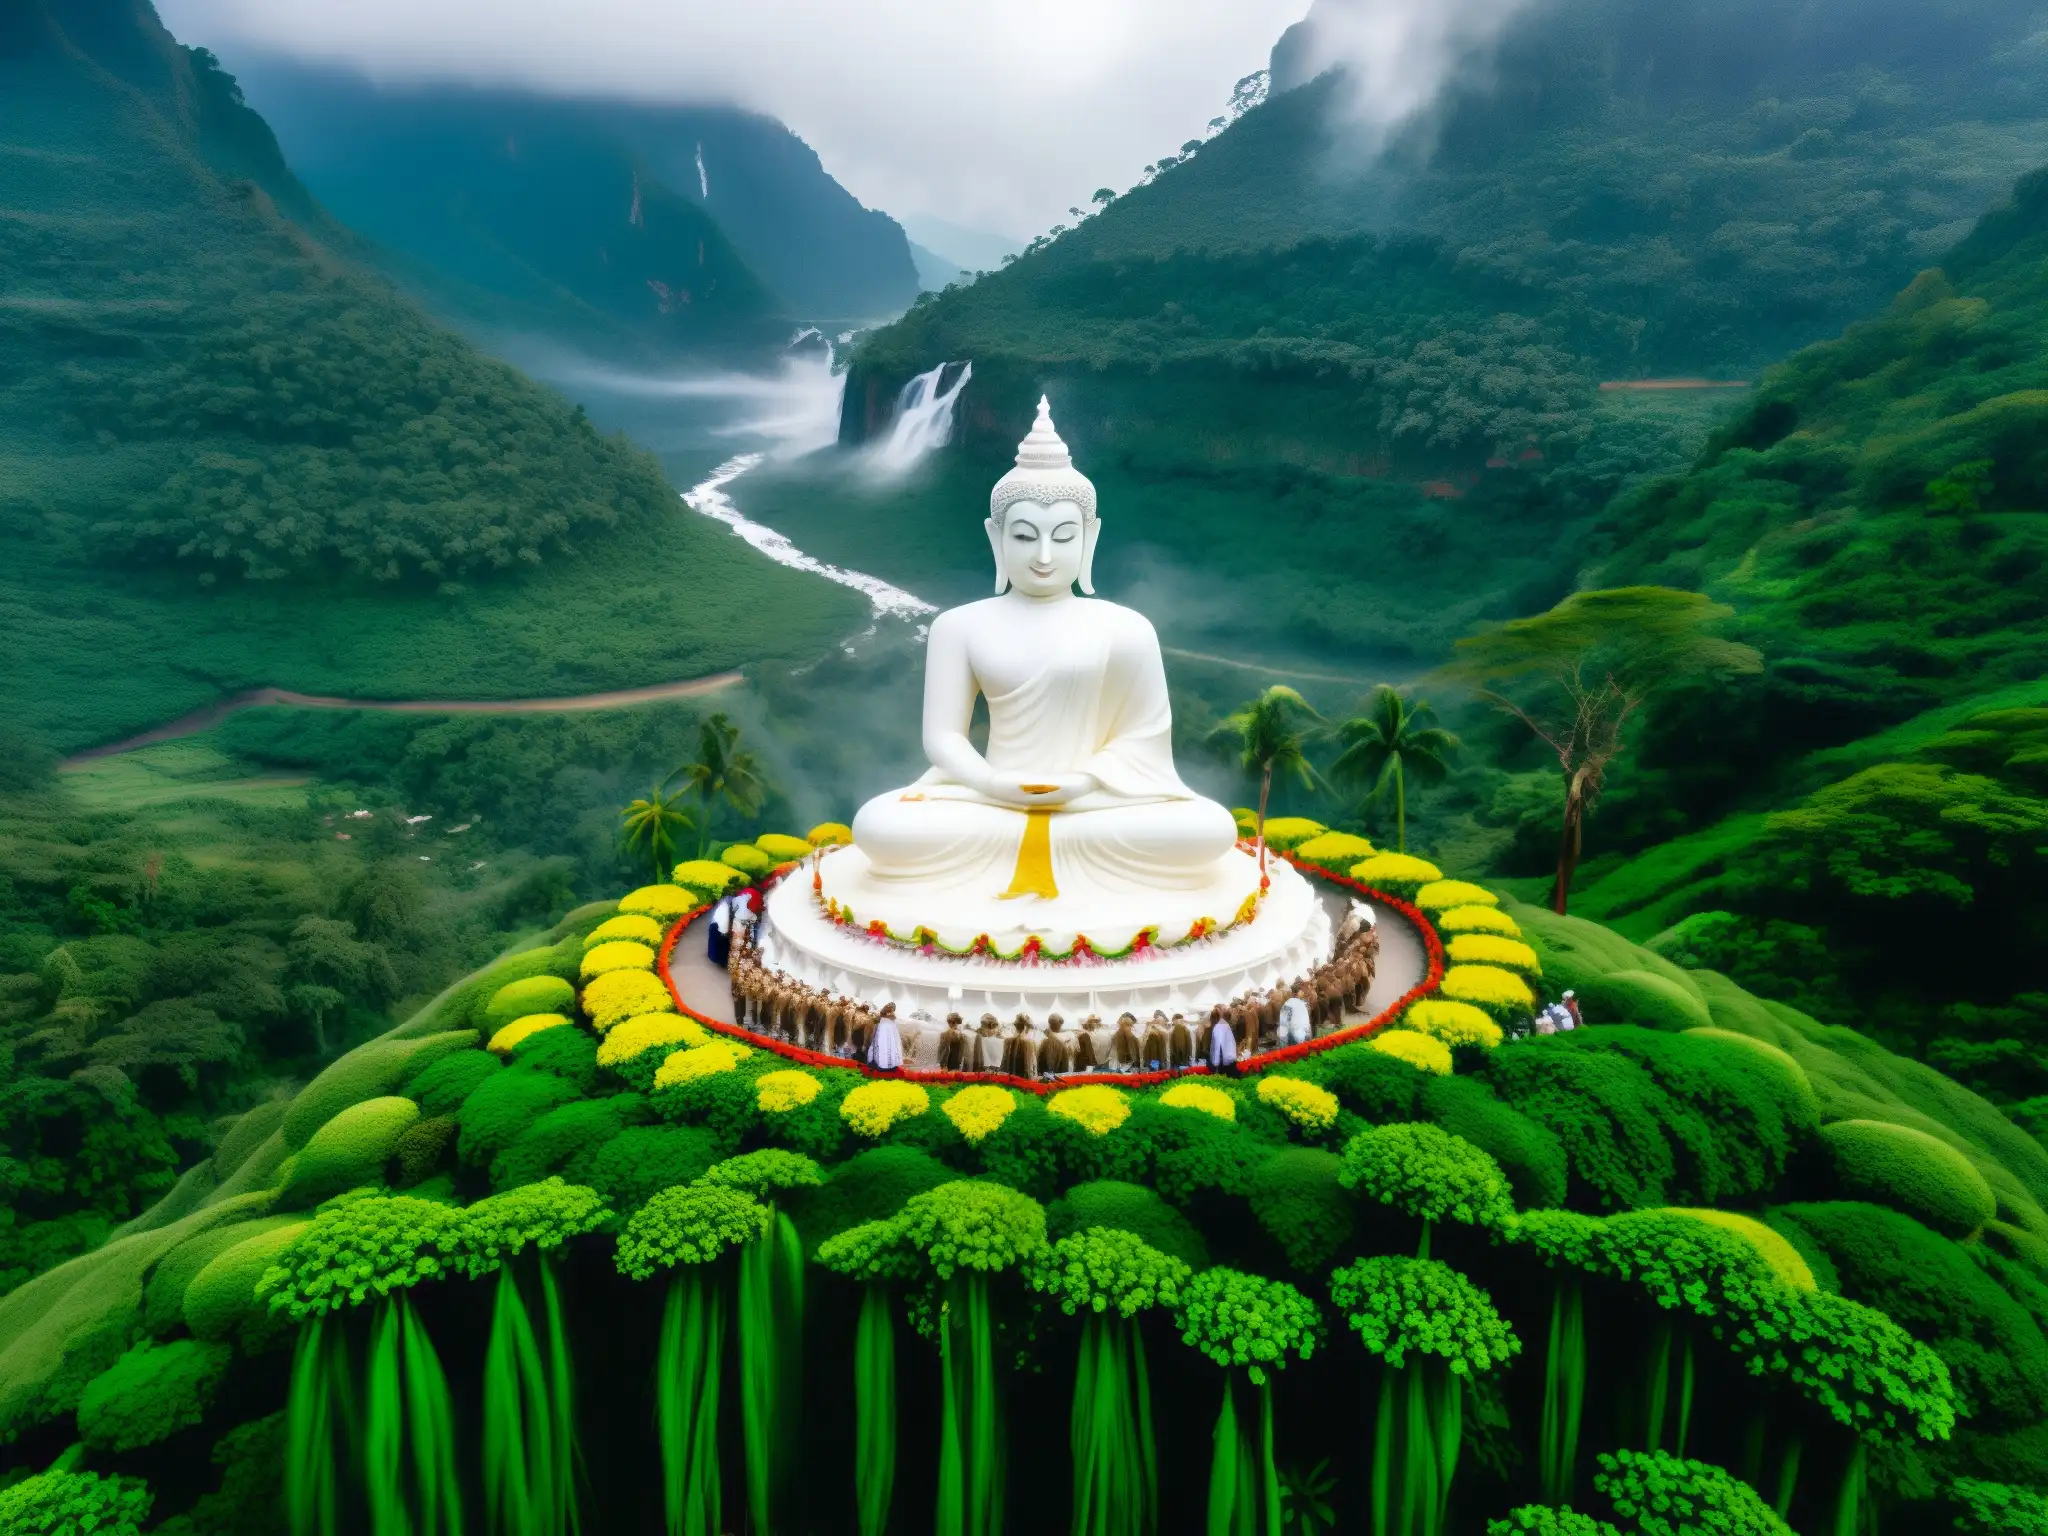 Influencia misticismo diosa blanca Sri Lanka: Vista aérea de montañas neblinosas, cascadas y ritual sagrado con locales vestidos de blanco